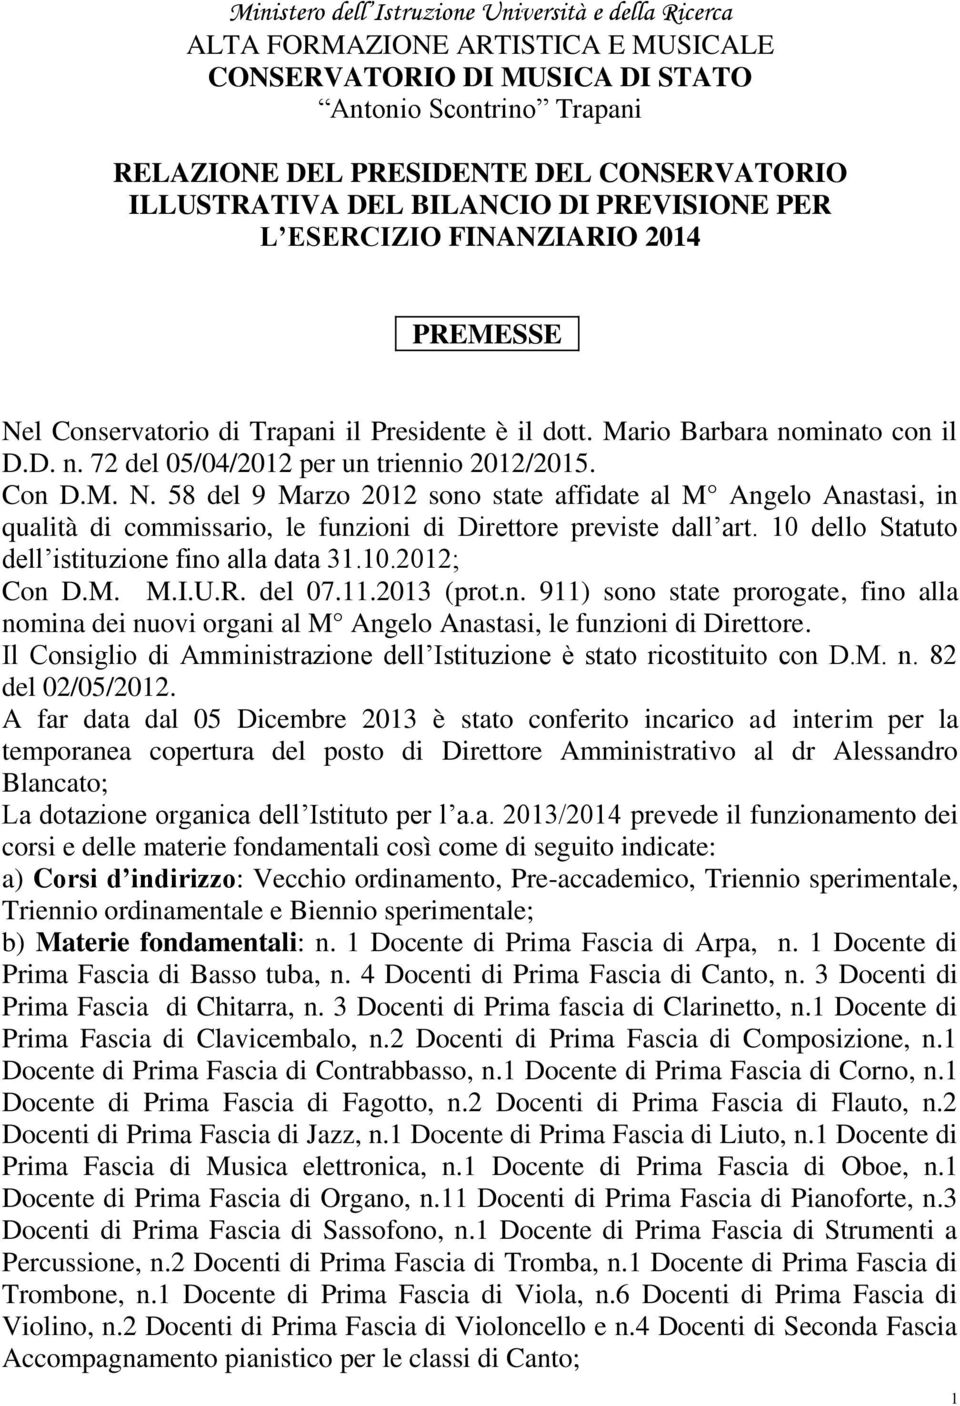 Con D.M. N. 58 del 9 Marzo 2012 sono state affidate al M Angelo Anastasi, in qualità di commissario, le funzioni di Direttore previste dall art. 10 dello Statuto dell istituzione fino alla data 31.10.2012; Con D.